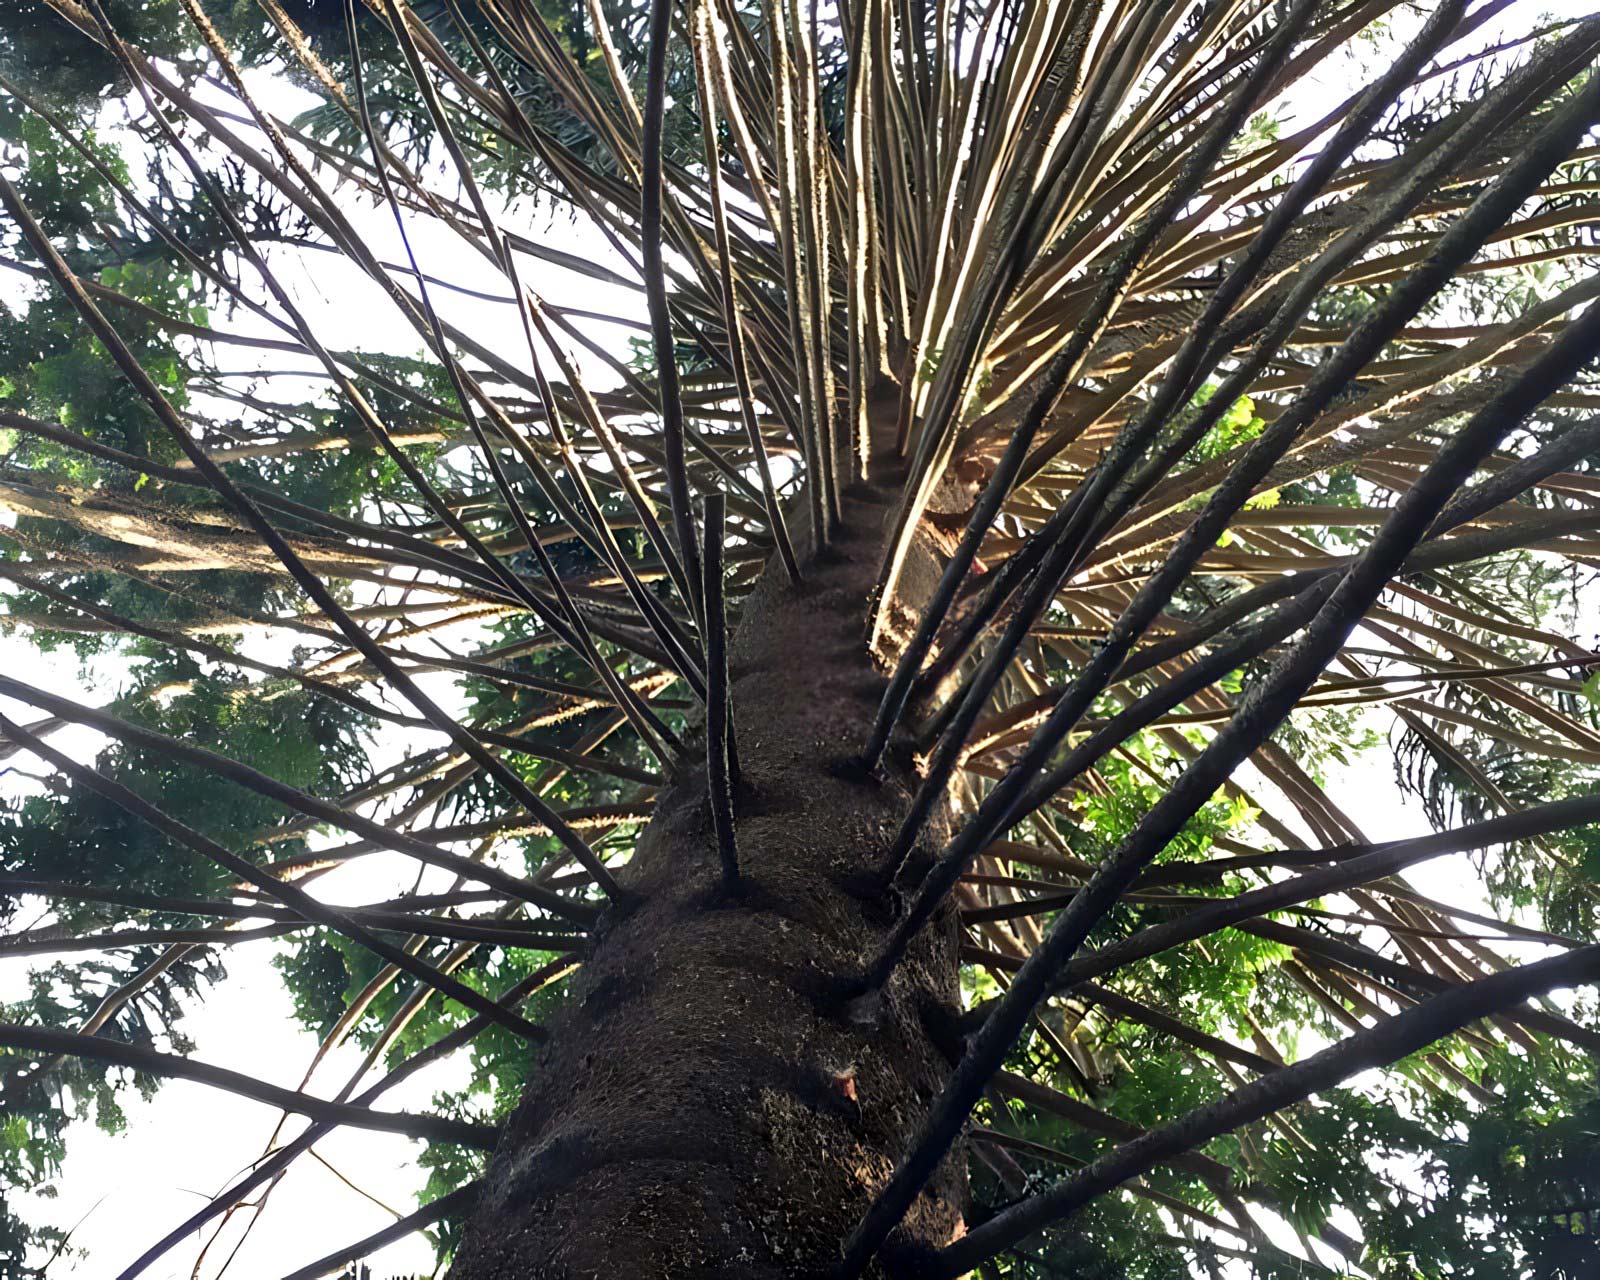 Araucaria bidwillii, Bunya Bunya Pine - whorls of radiating branches